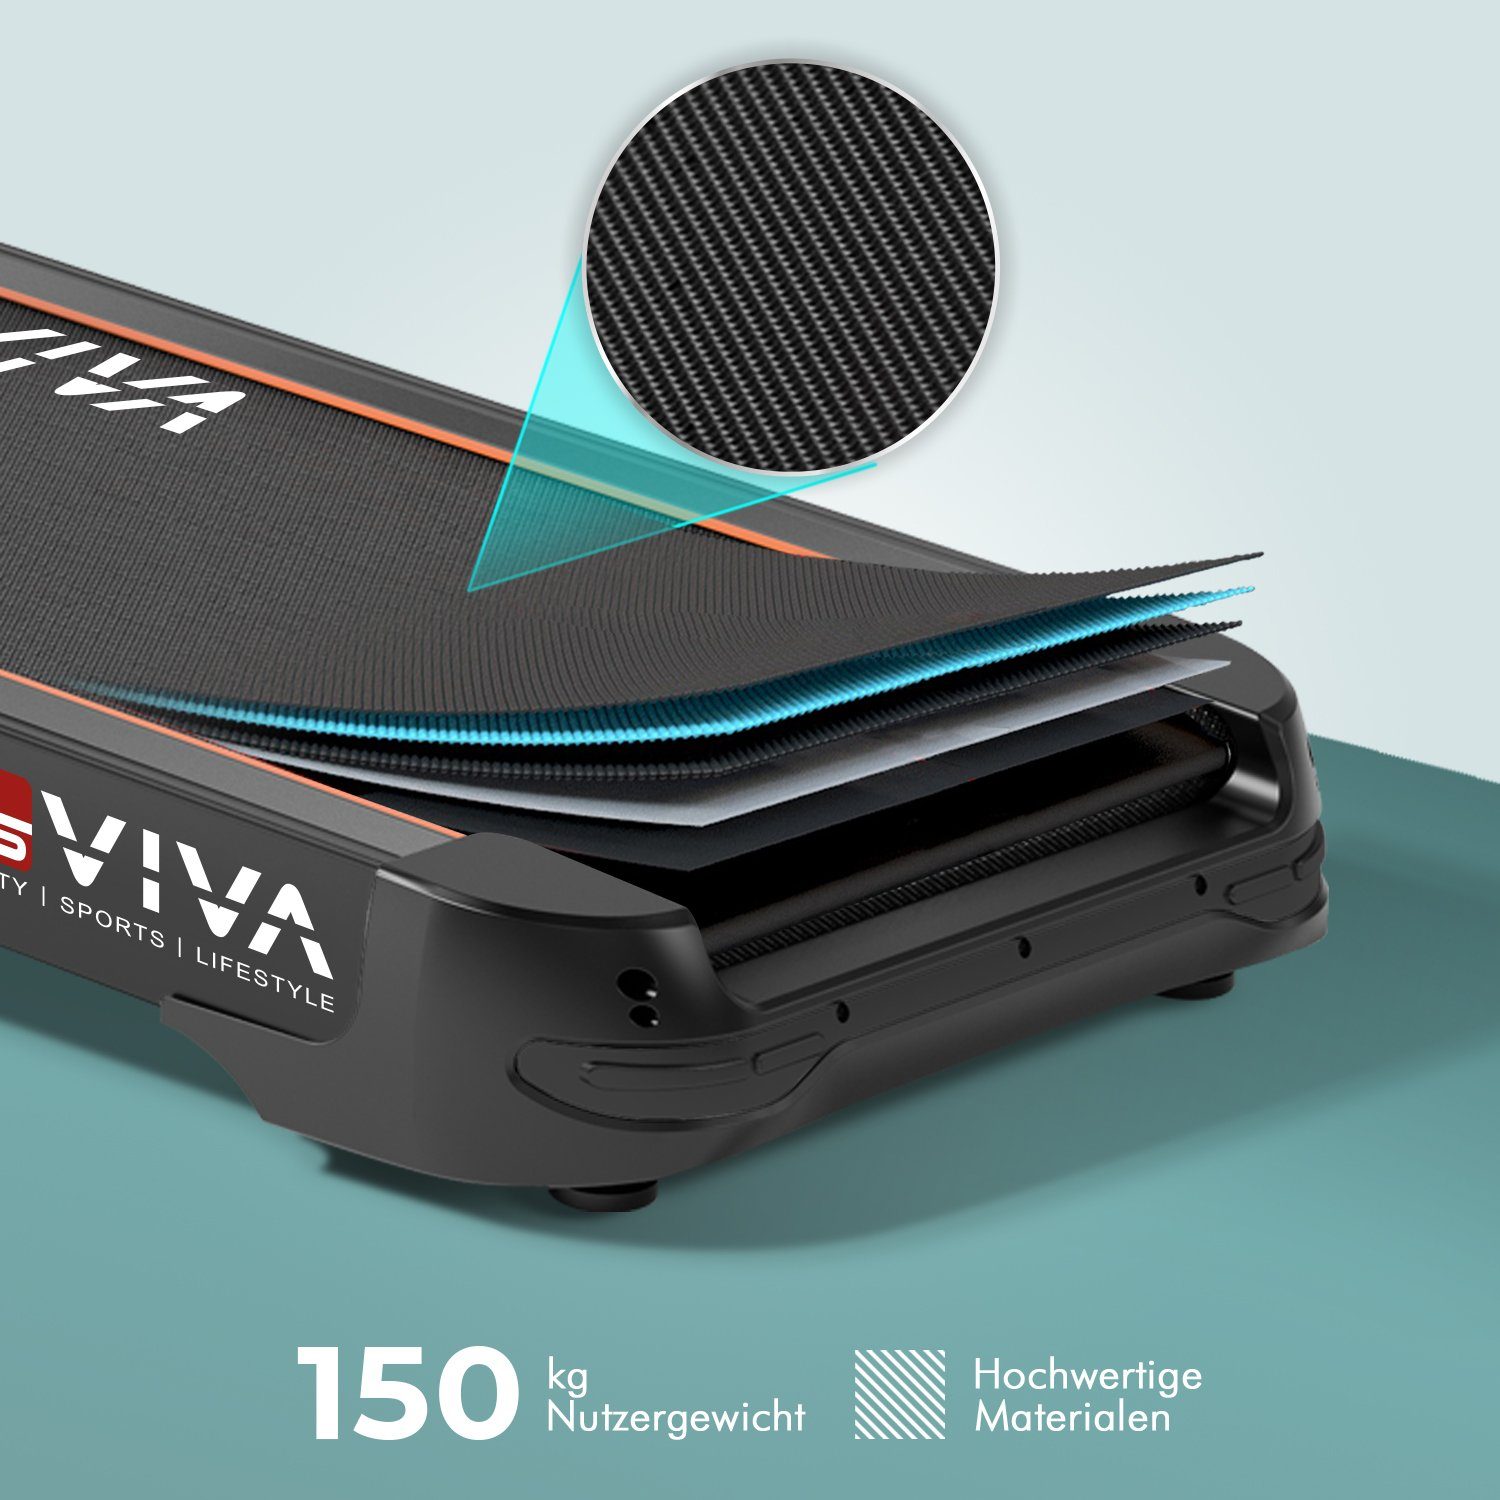 AsVIVA Laufband AsVIVA T18 Pro Touchscreen, Android Polar, 15,6" Touch - Inklusive Lautsprecher Konsole Bluetooth System